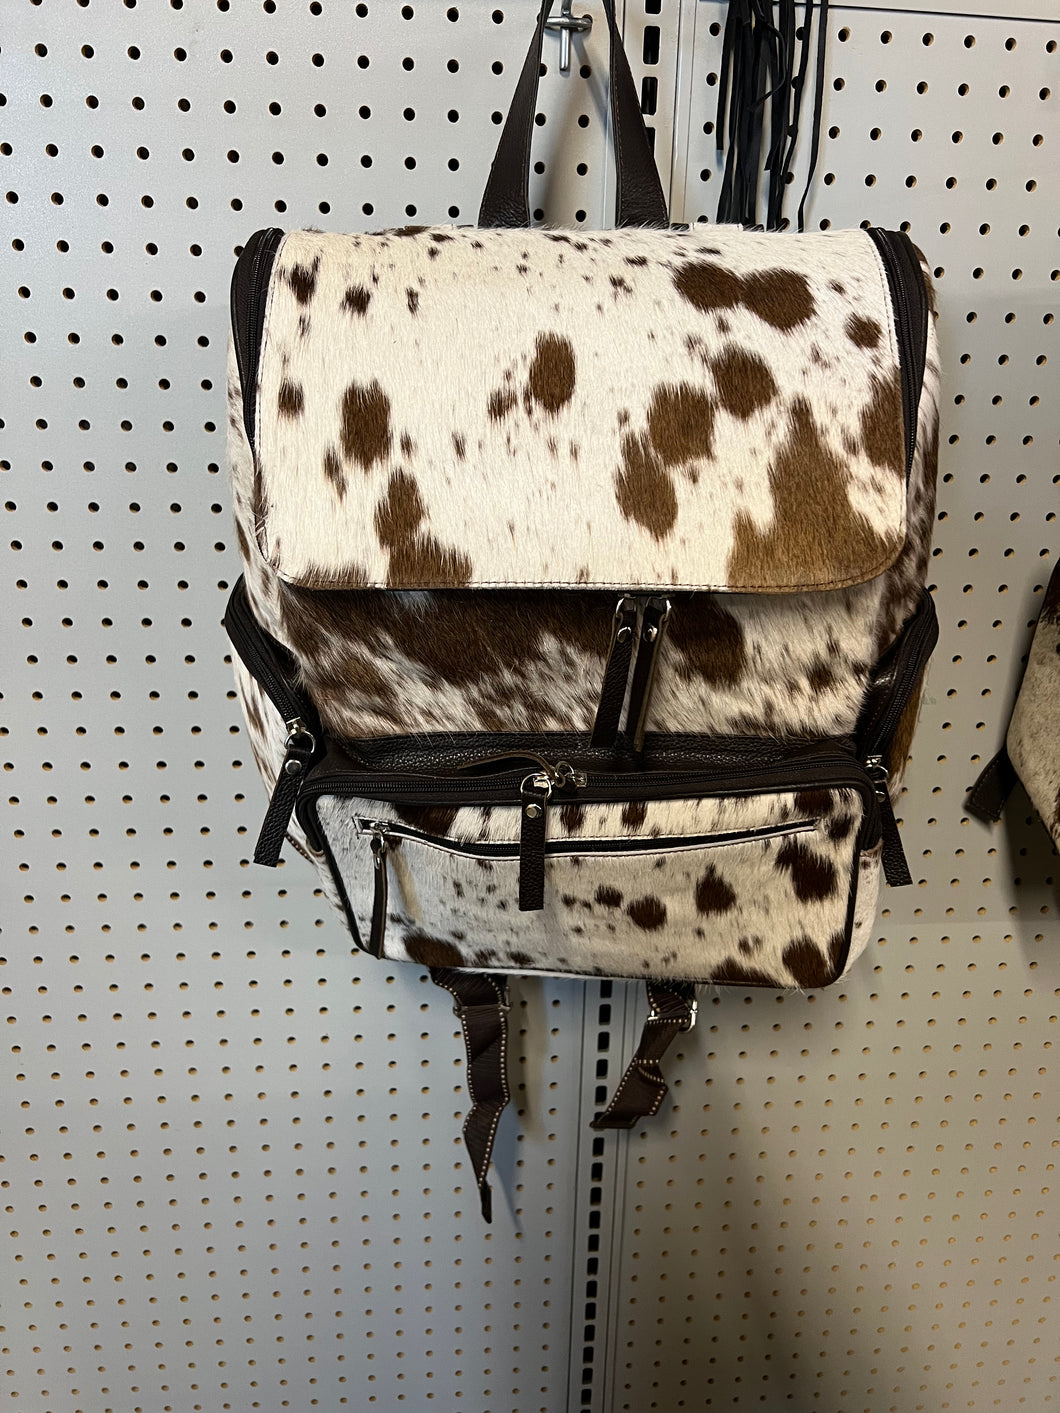 Brown large cowhide backpack or diaper bag